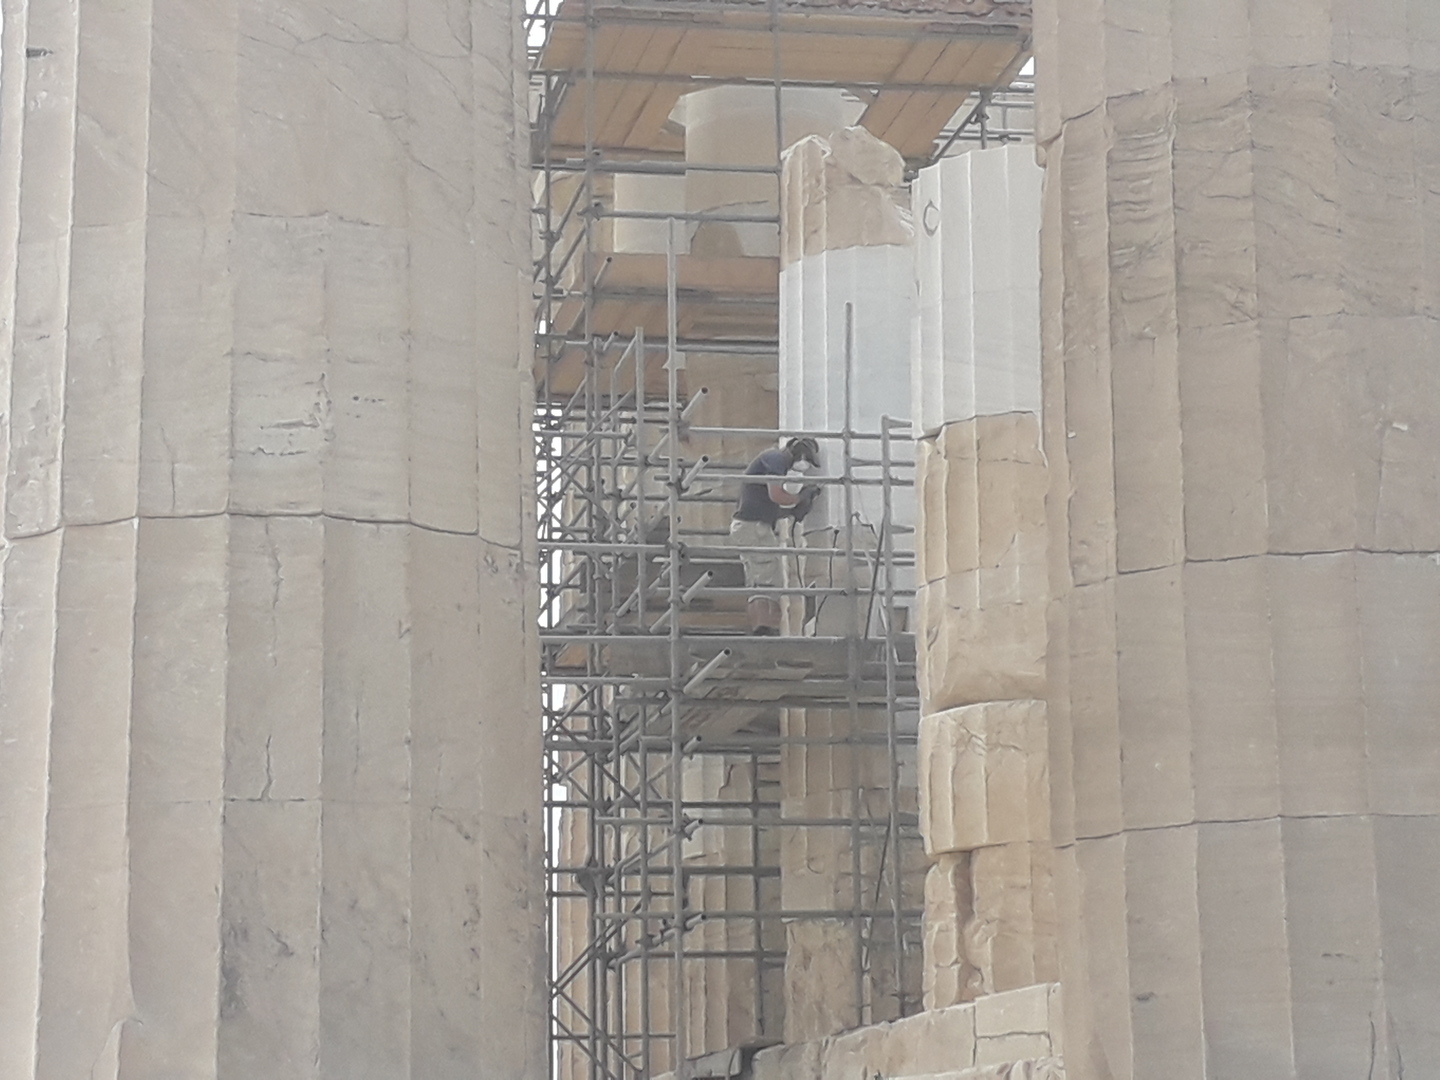 Image 30 : Ouvrier sur un échaffaudage entrain de restaurer des colonnes